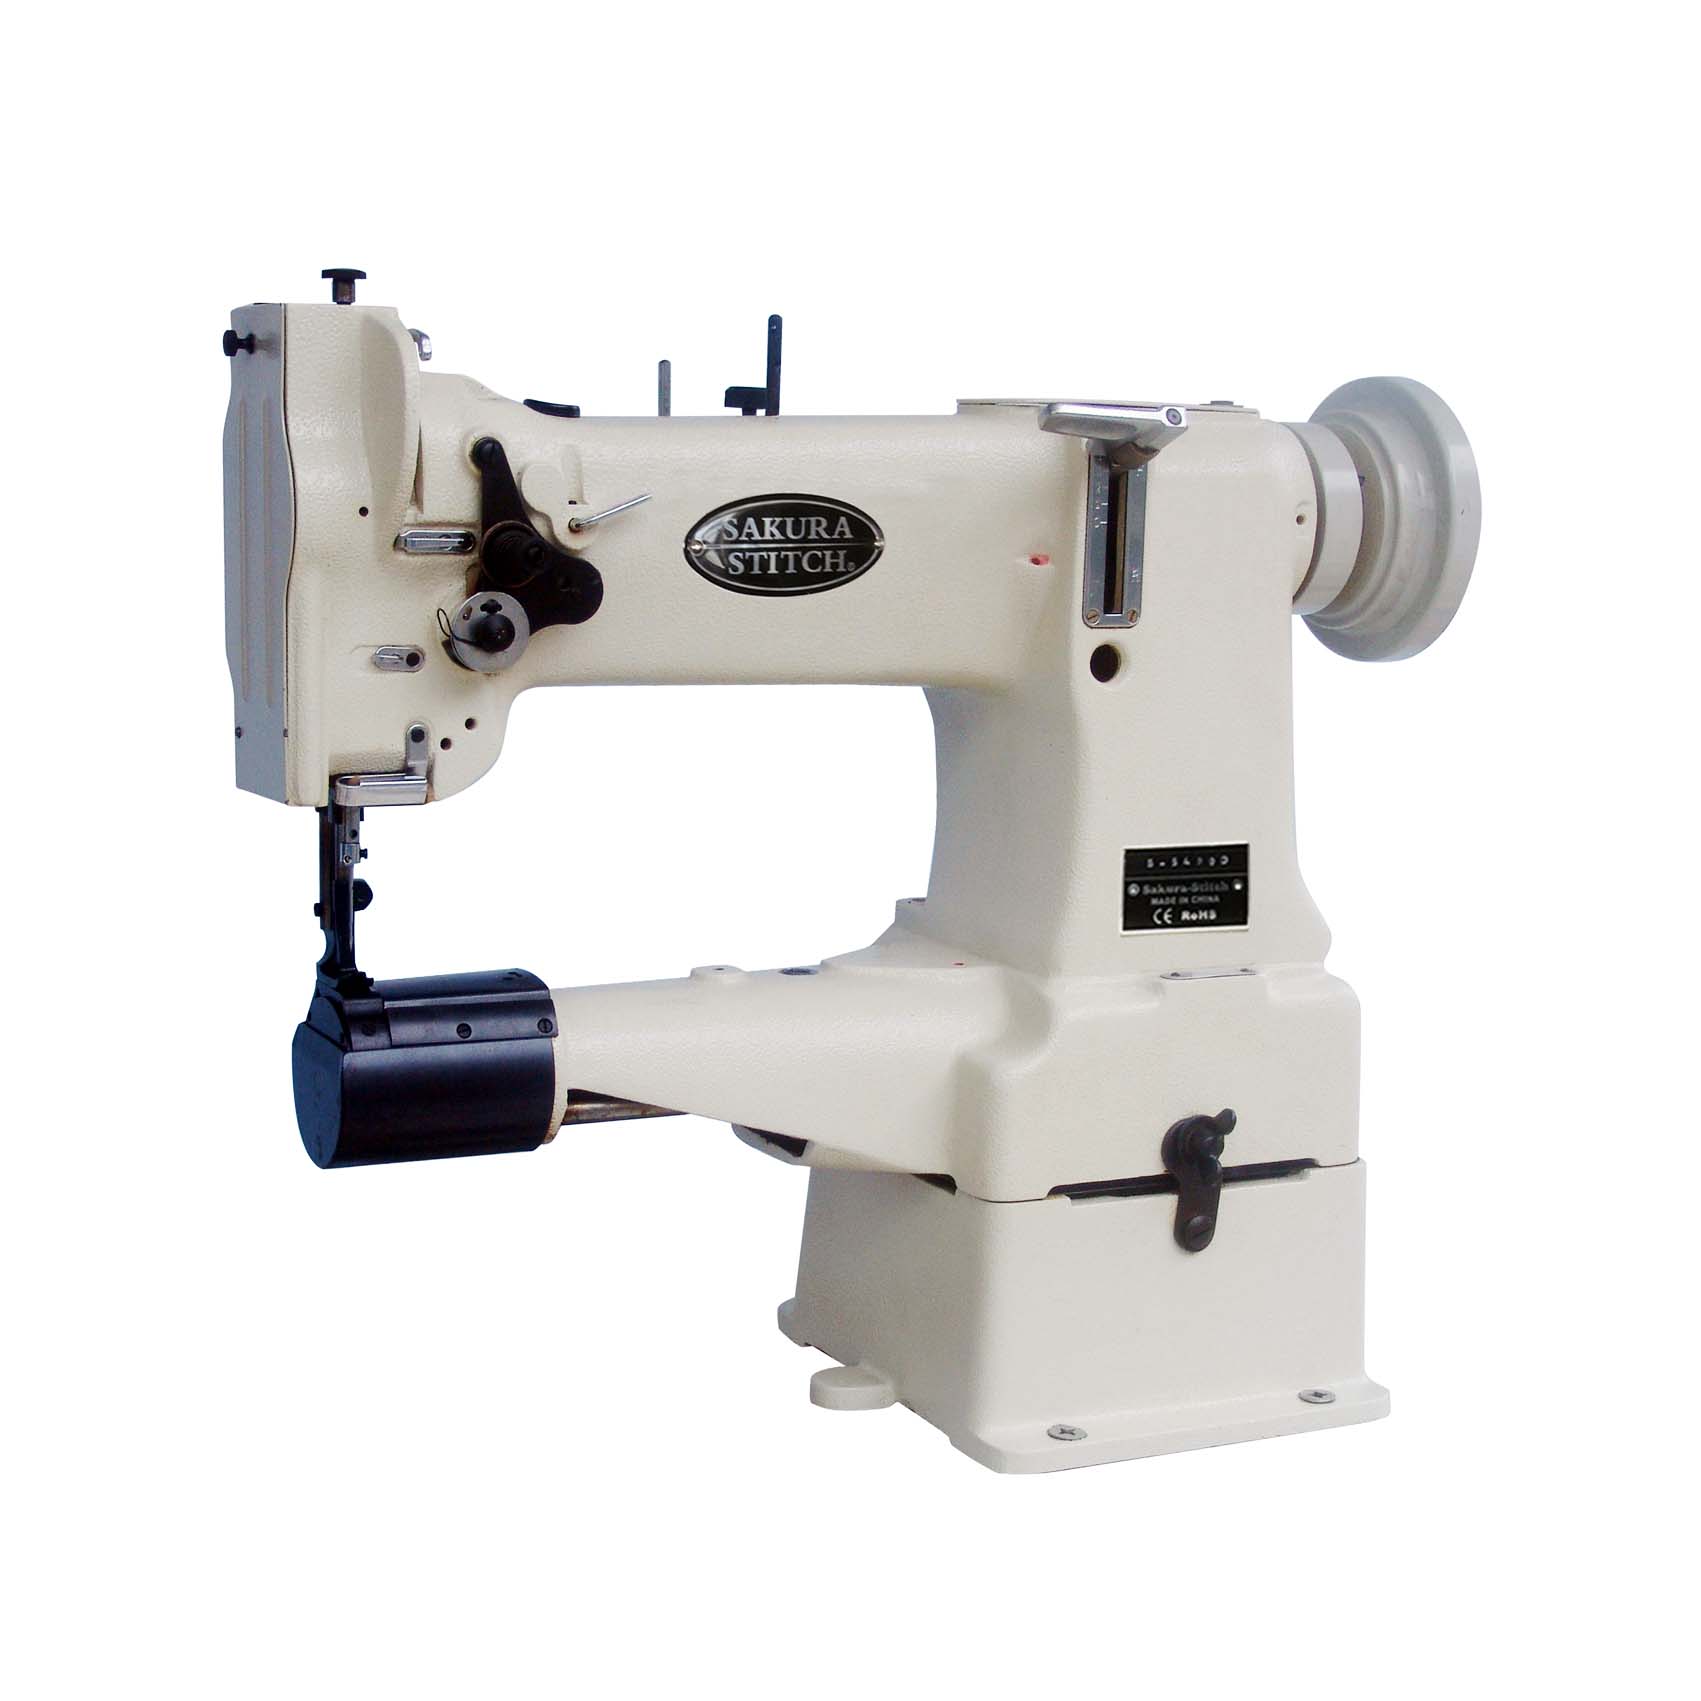 Cylinder Bed Sewing Machine - Sakura-Stitch